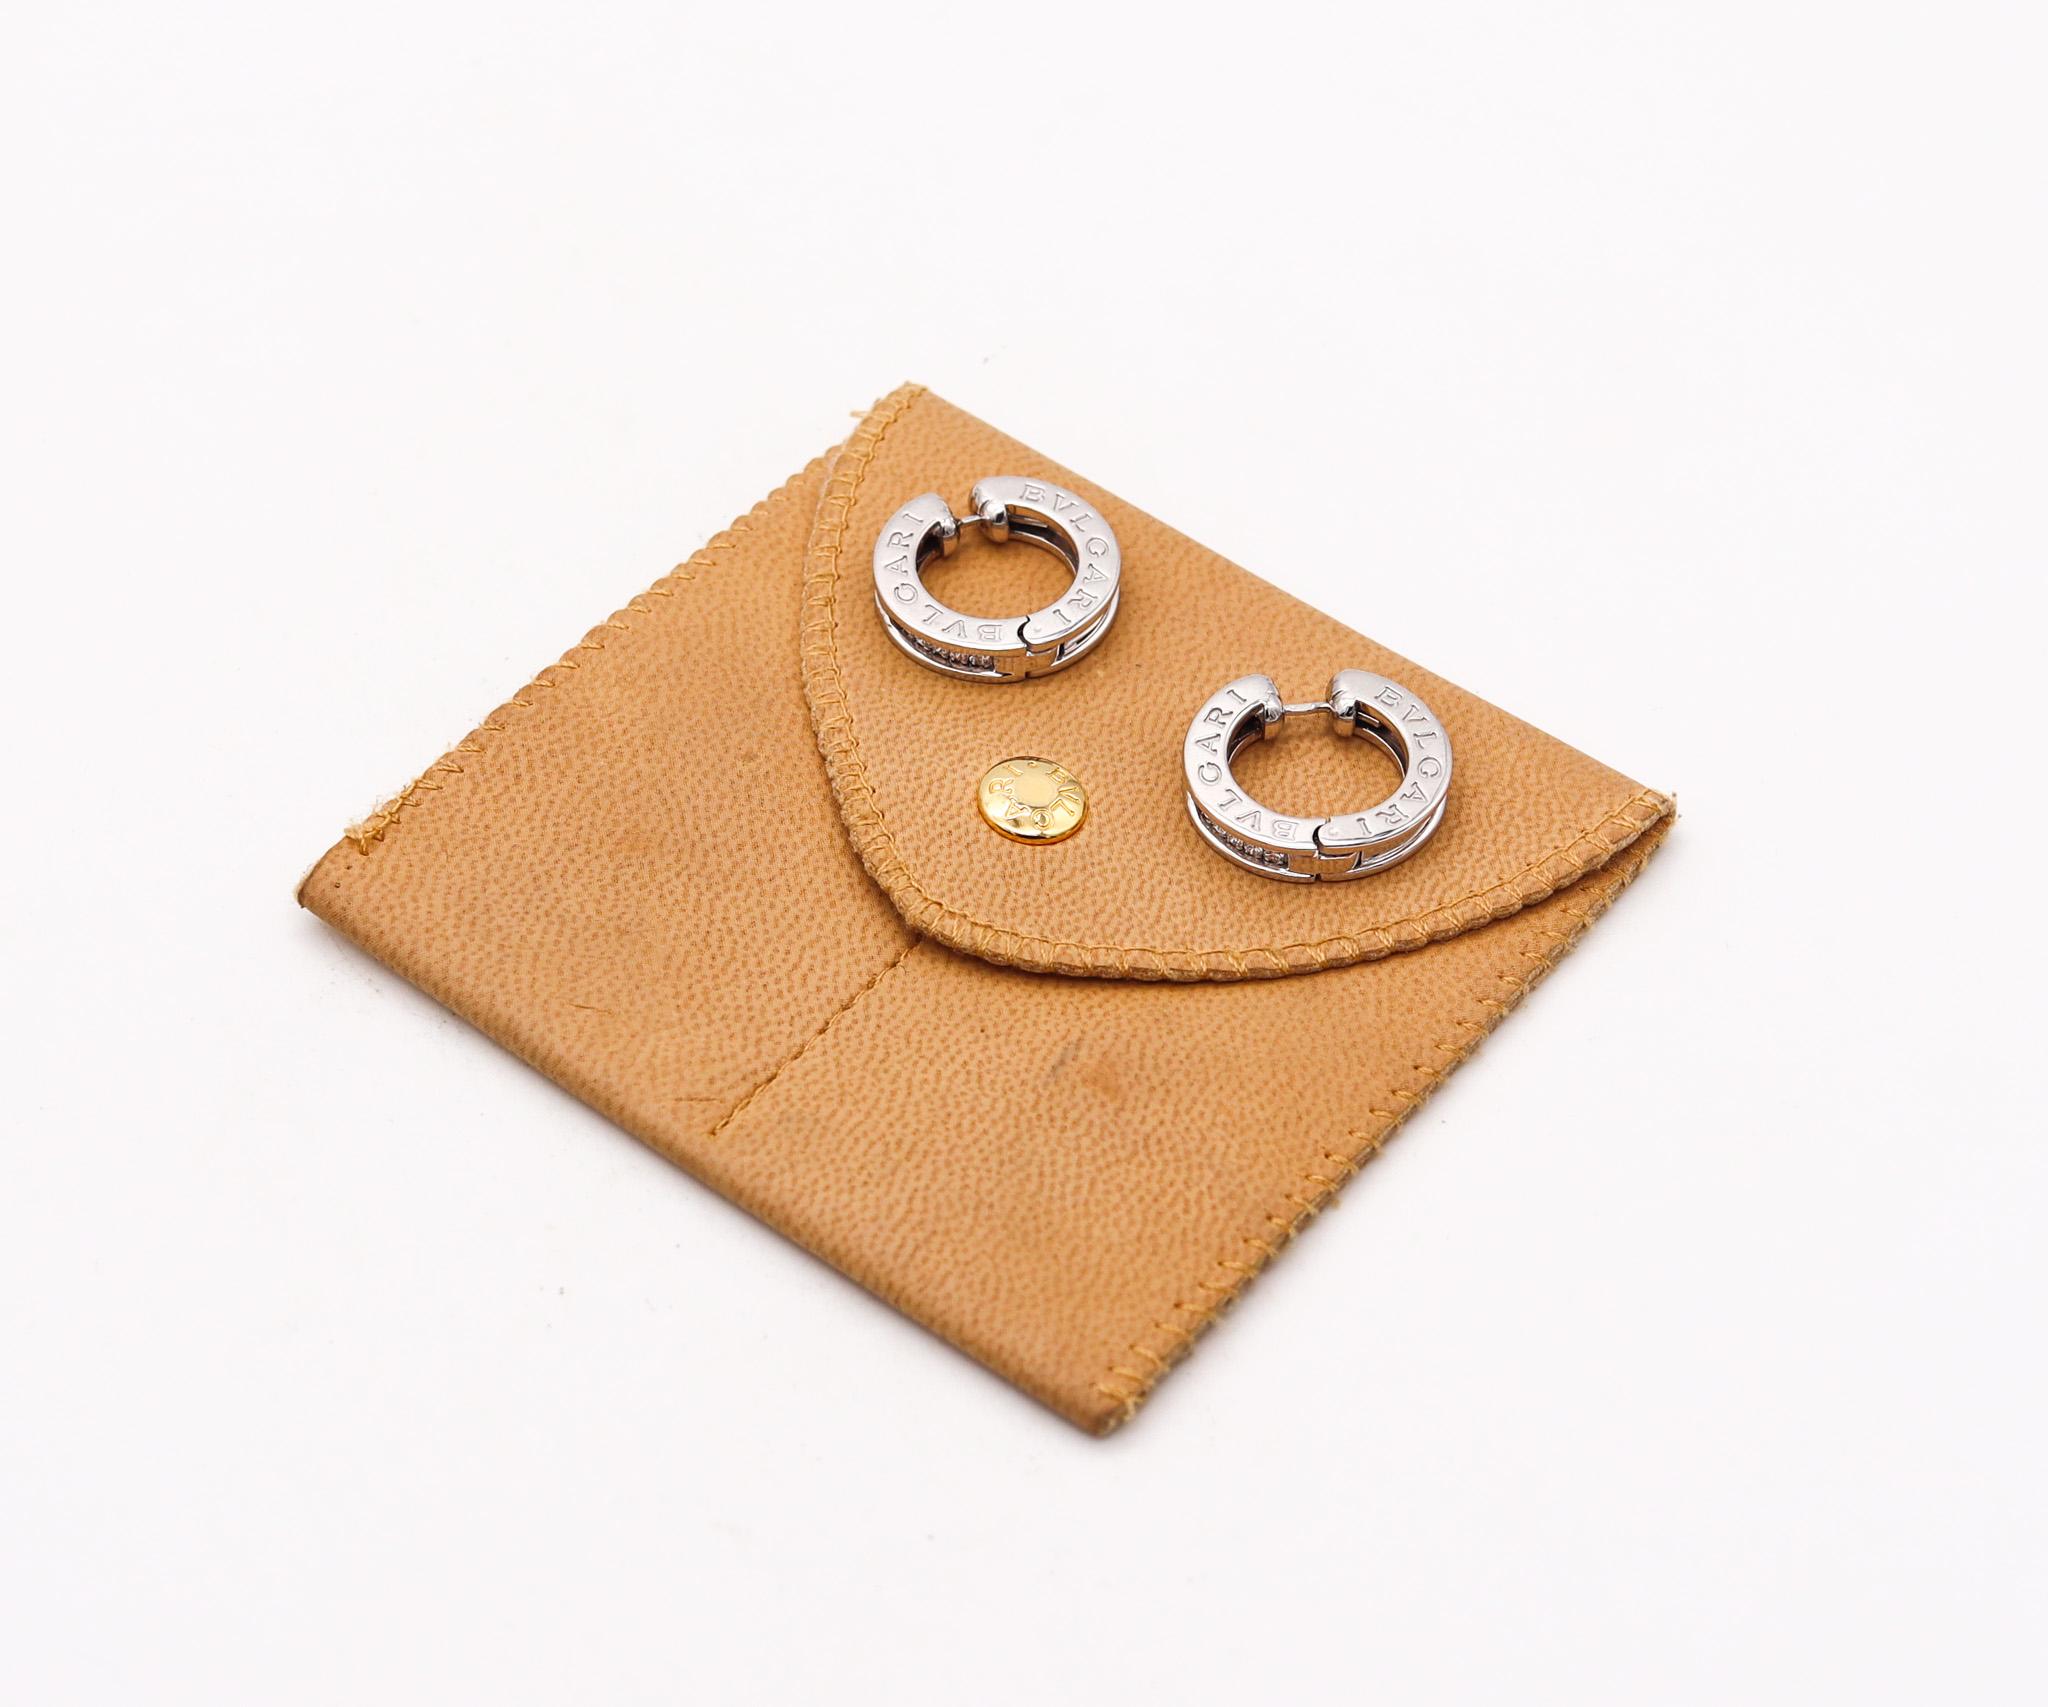 B Zero Huggie-Ohrringe von Bvlgari.

Ikonisches Paar Signatures B-Zero Huggie-Ohrringe, kreiert in Italien vom Schmuckhaus Bvlgari. Diese modernen Ohrringe sind aus massivem 18-karätigem Weißgold gefertigt und hochglanzpoliert. Viermal signiert mit